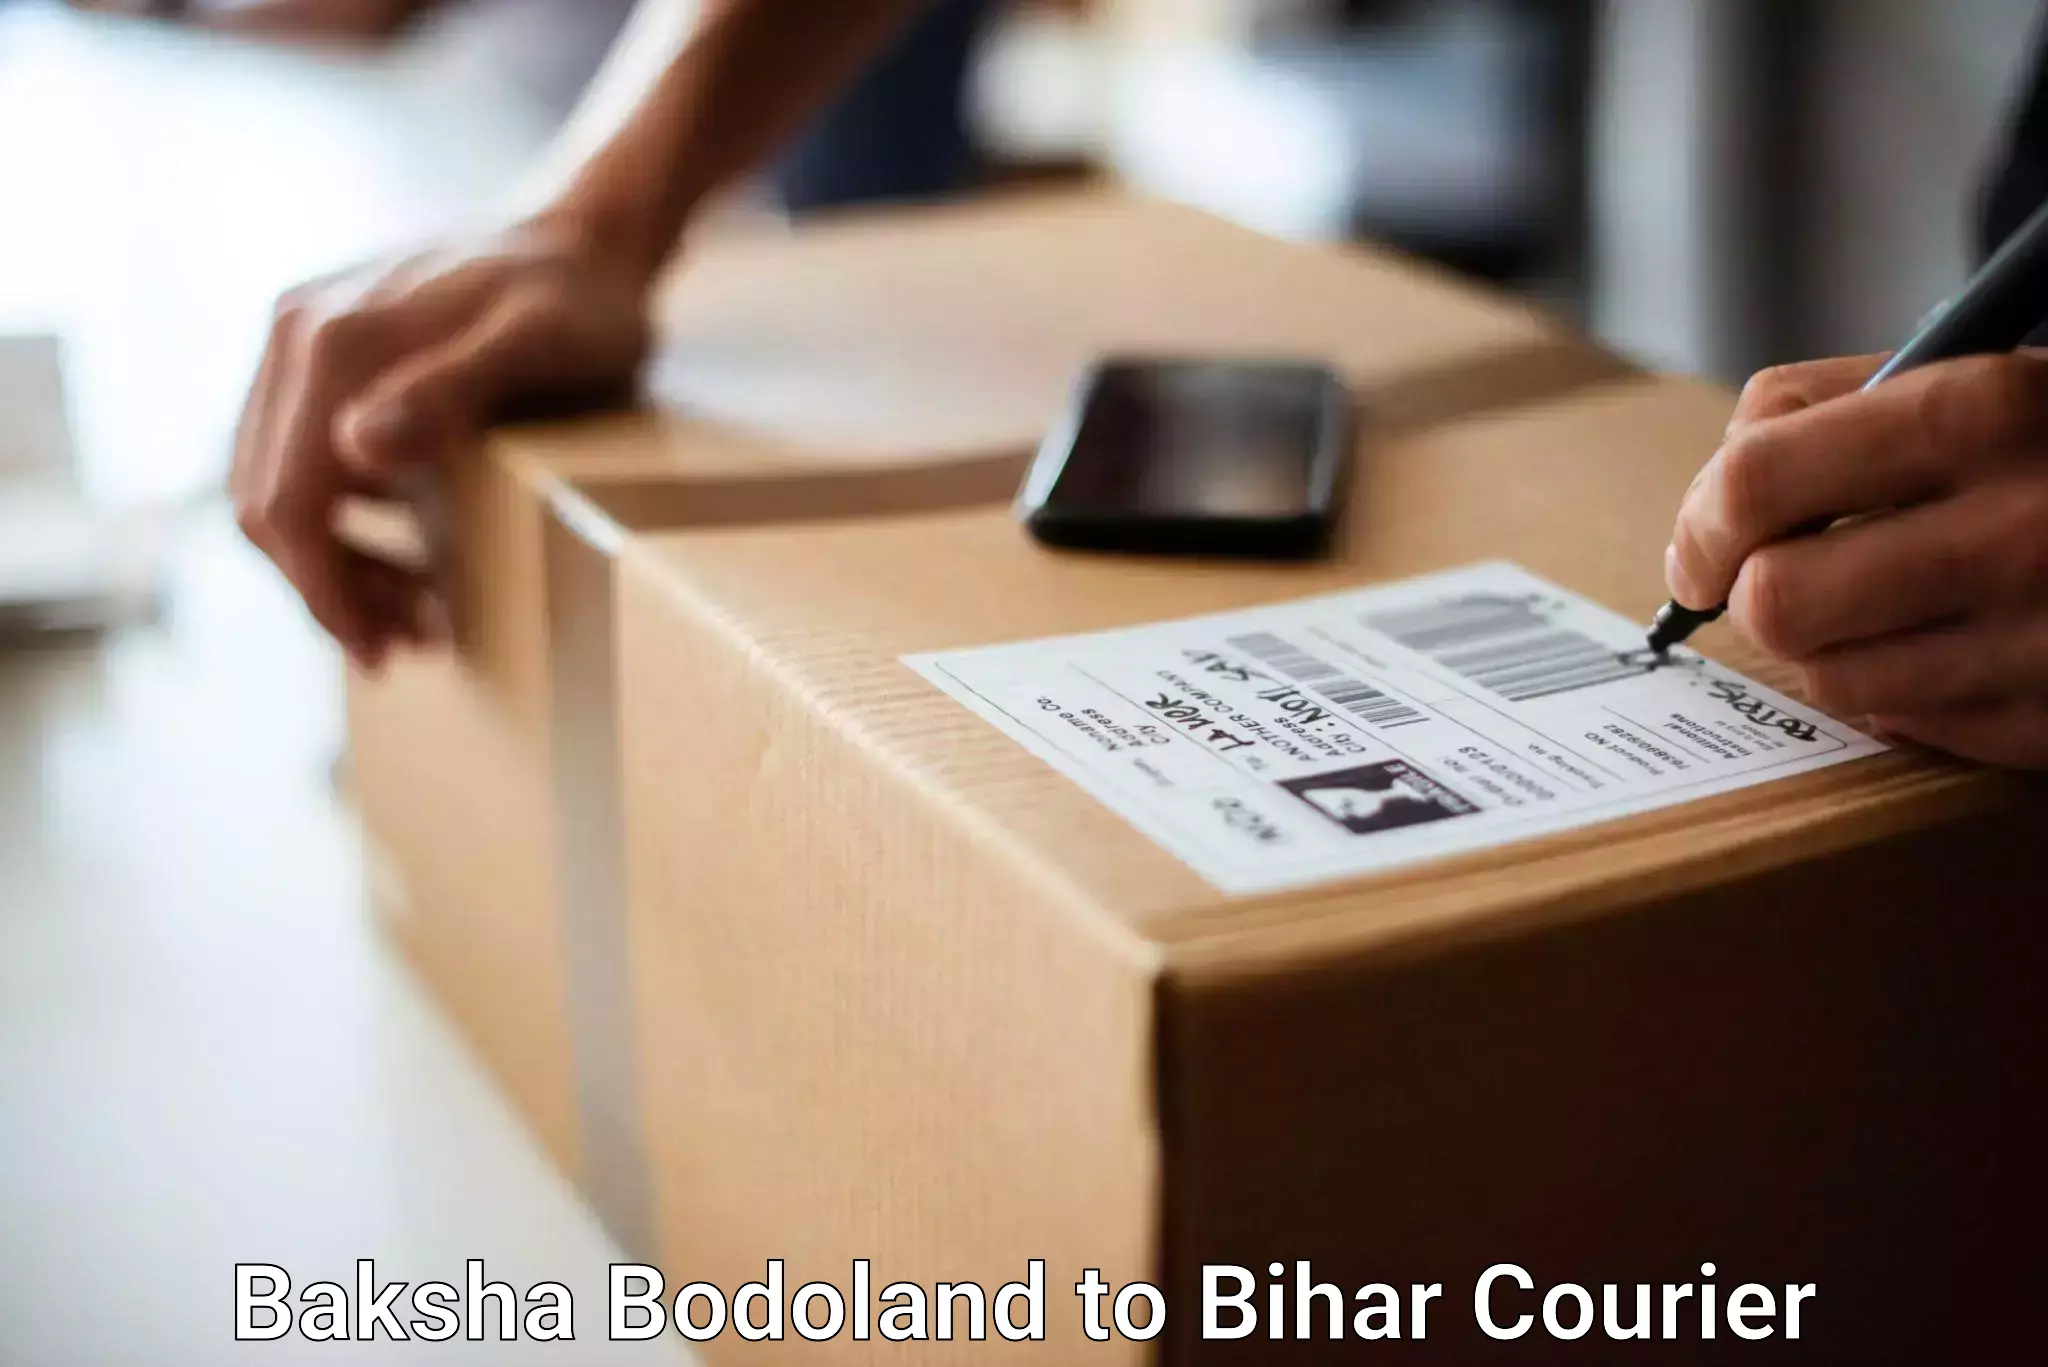 Luggage transport company Baksha Bodoland to Katihar